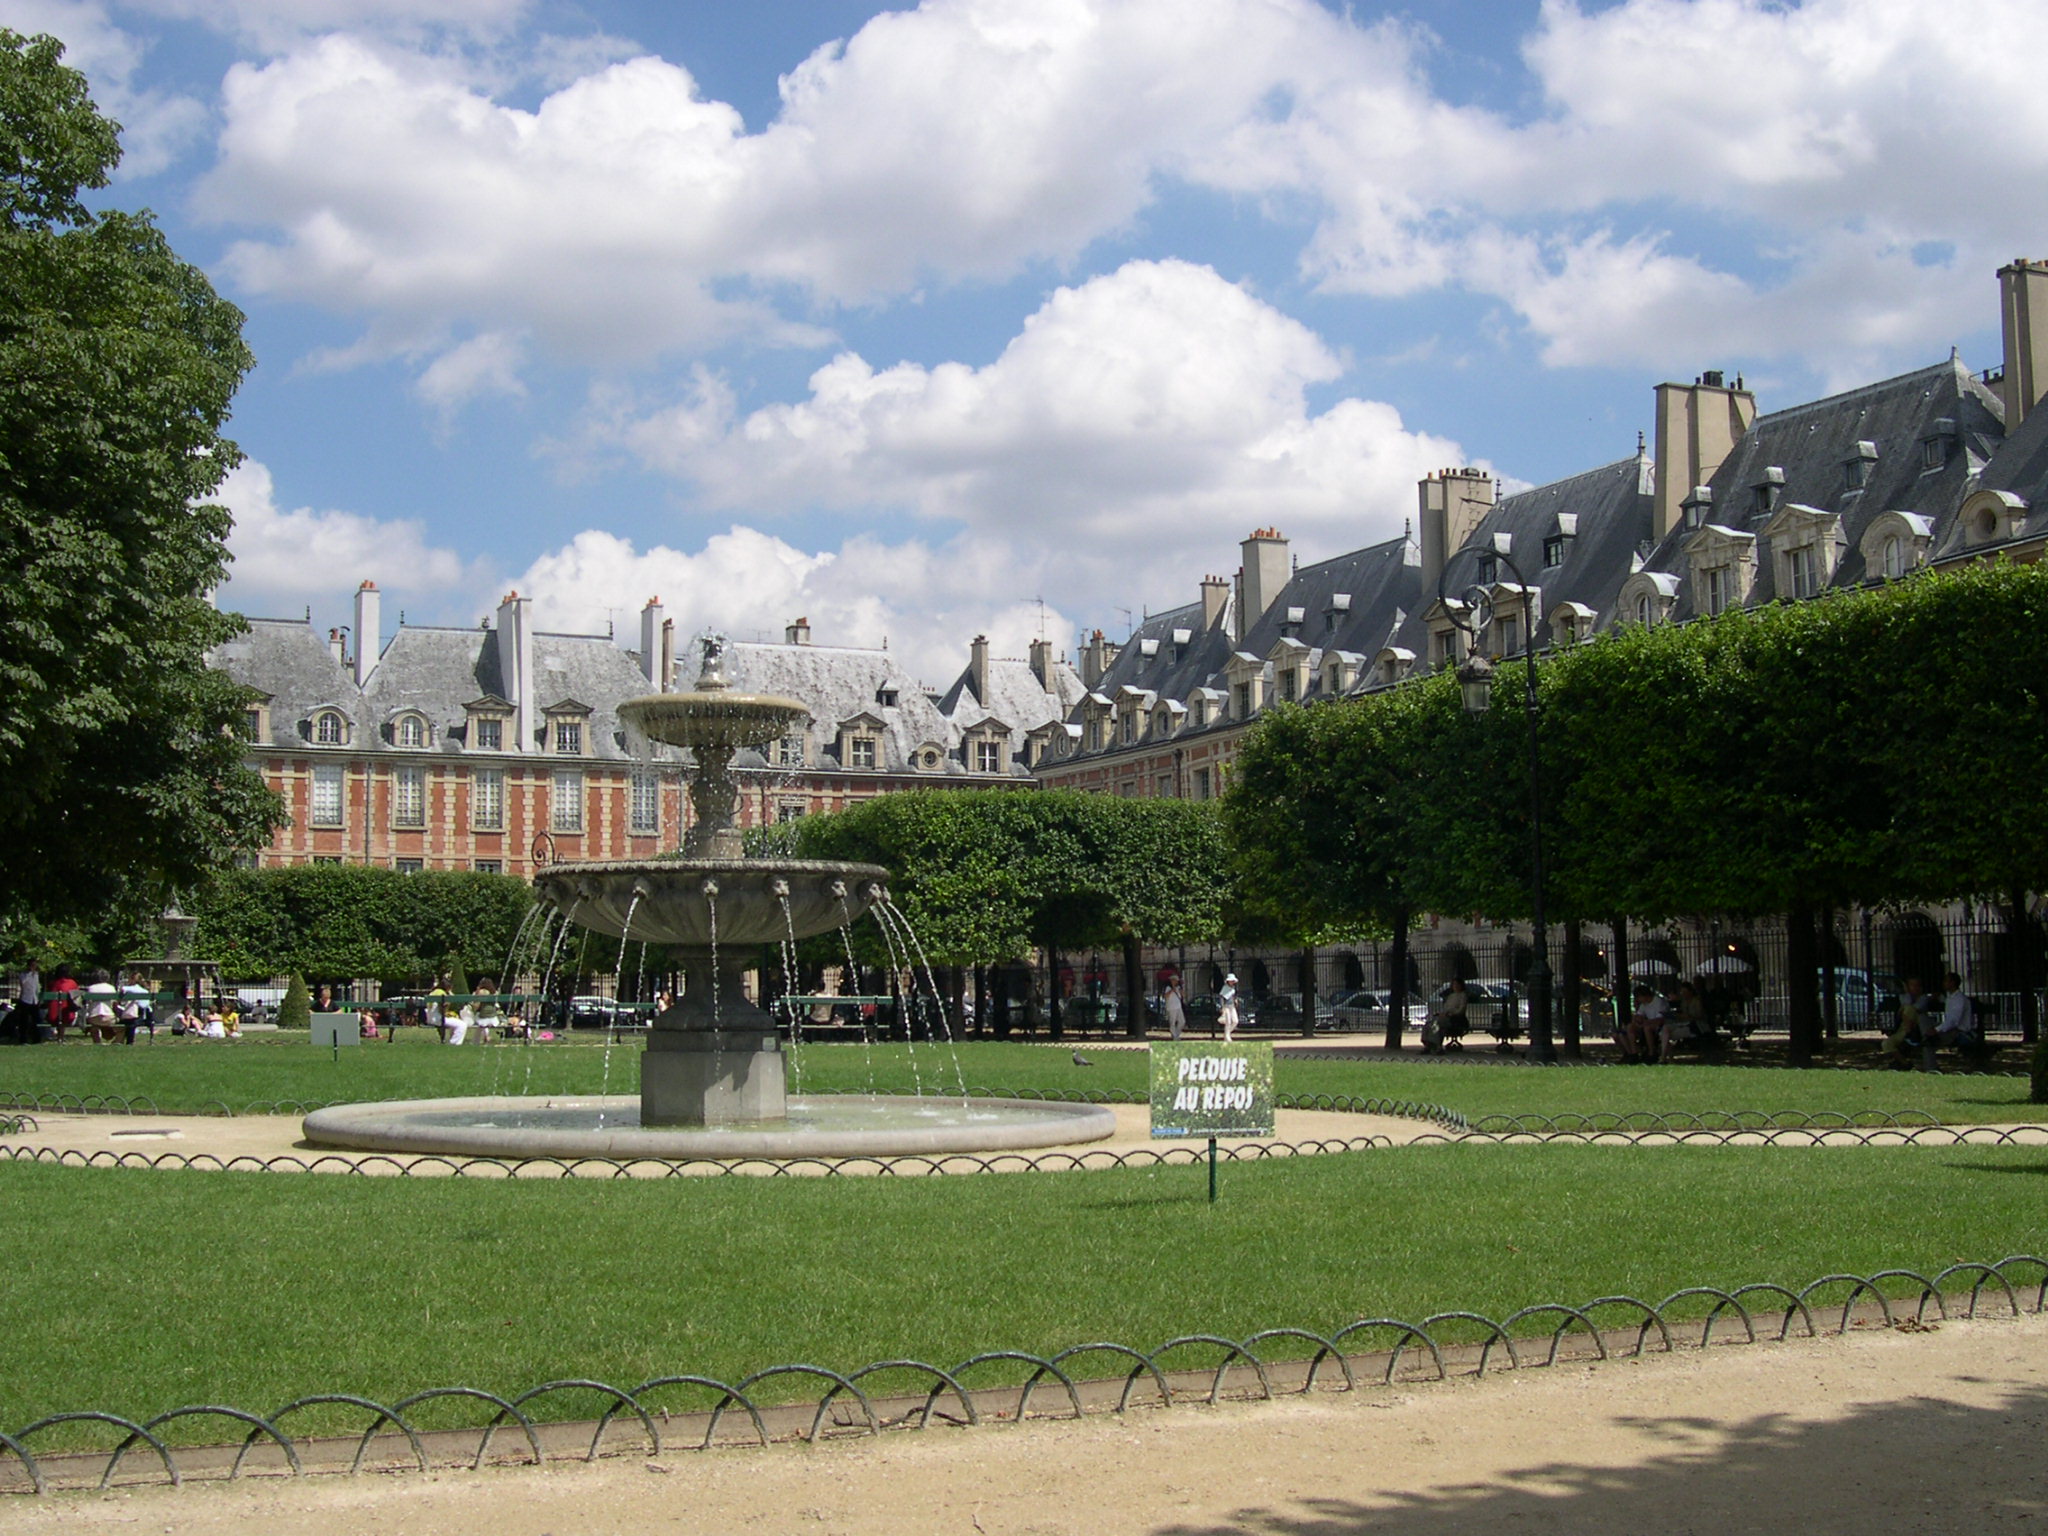 2CV Paris Tour : Visit Paris by 2CV! The Place des Vosges